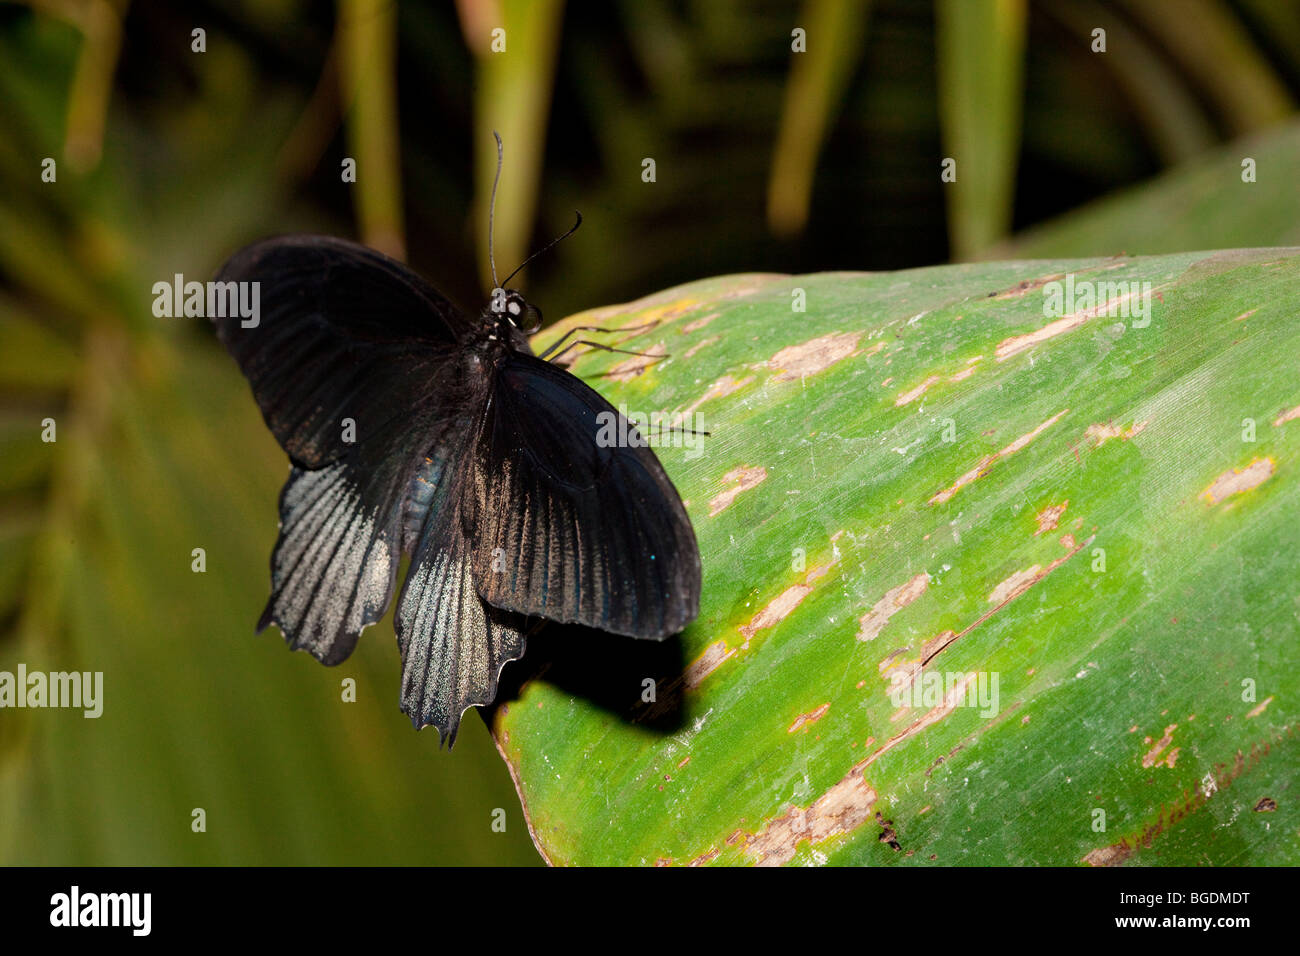 Great Mormon (Papilio memnon) butterfly, Parc de la tête d'or (Golden Head Park), Lyon, France Stock Photo